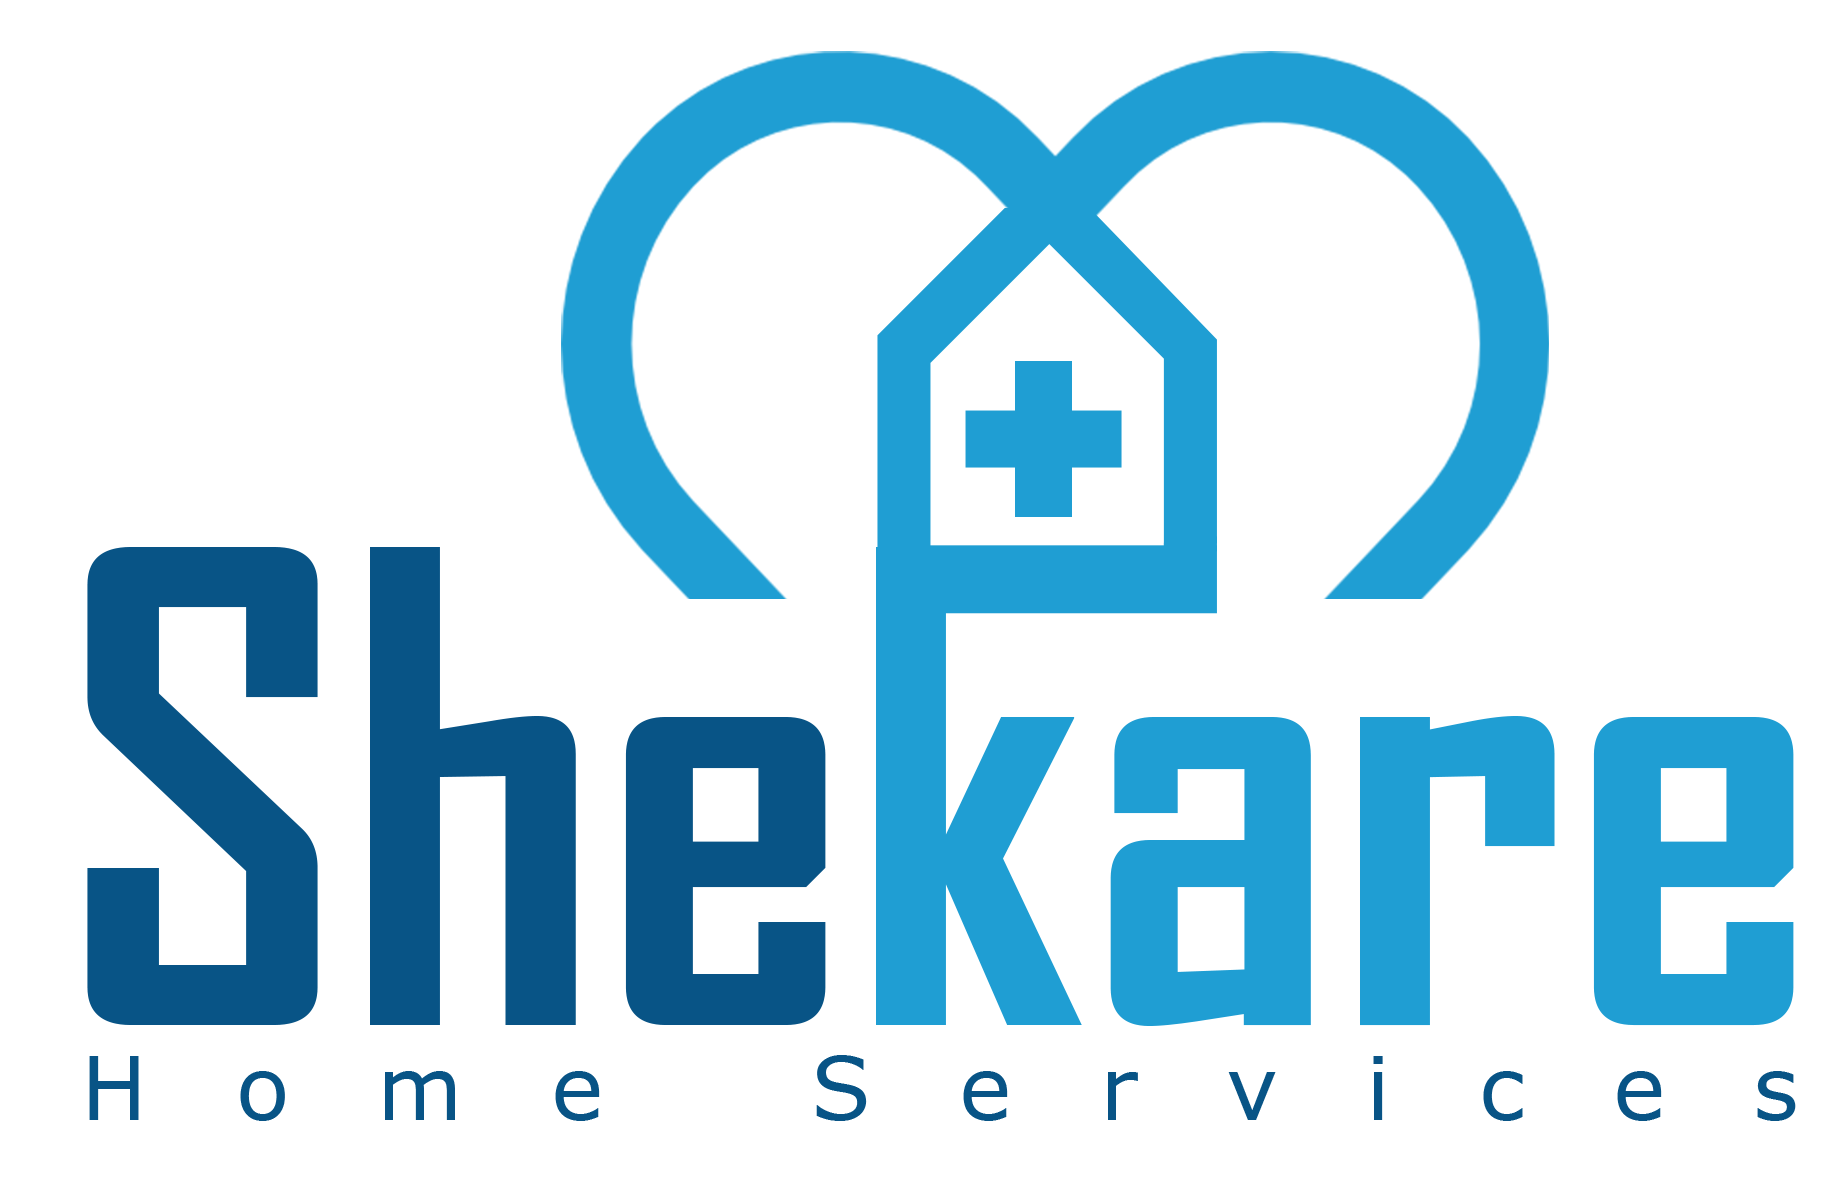 Shekare-logo-design.png